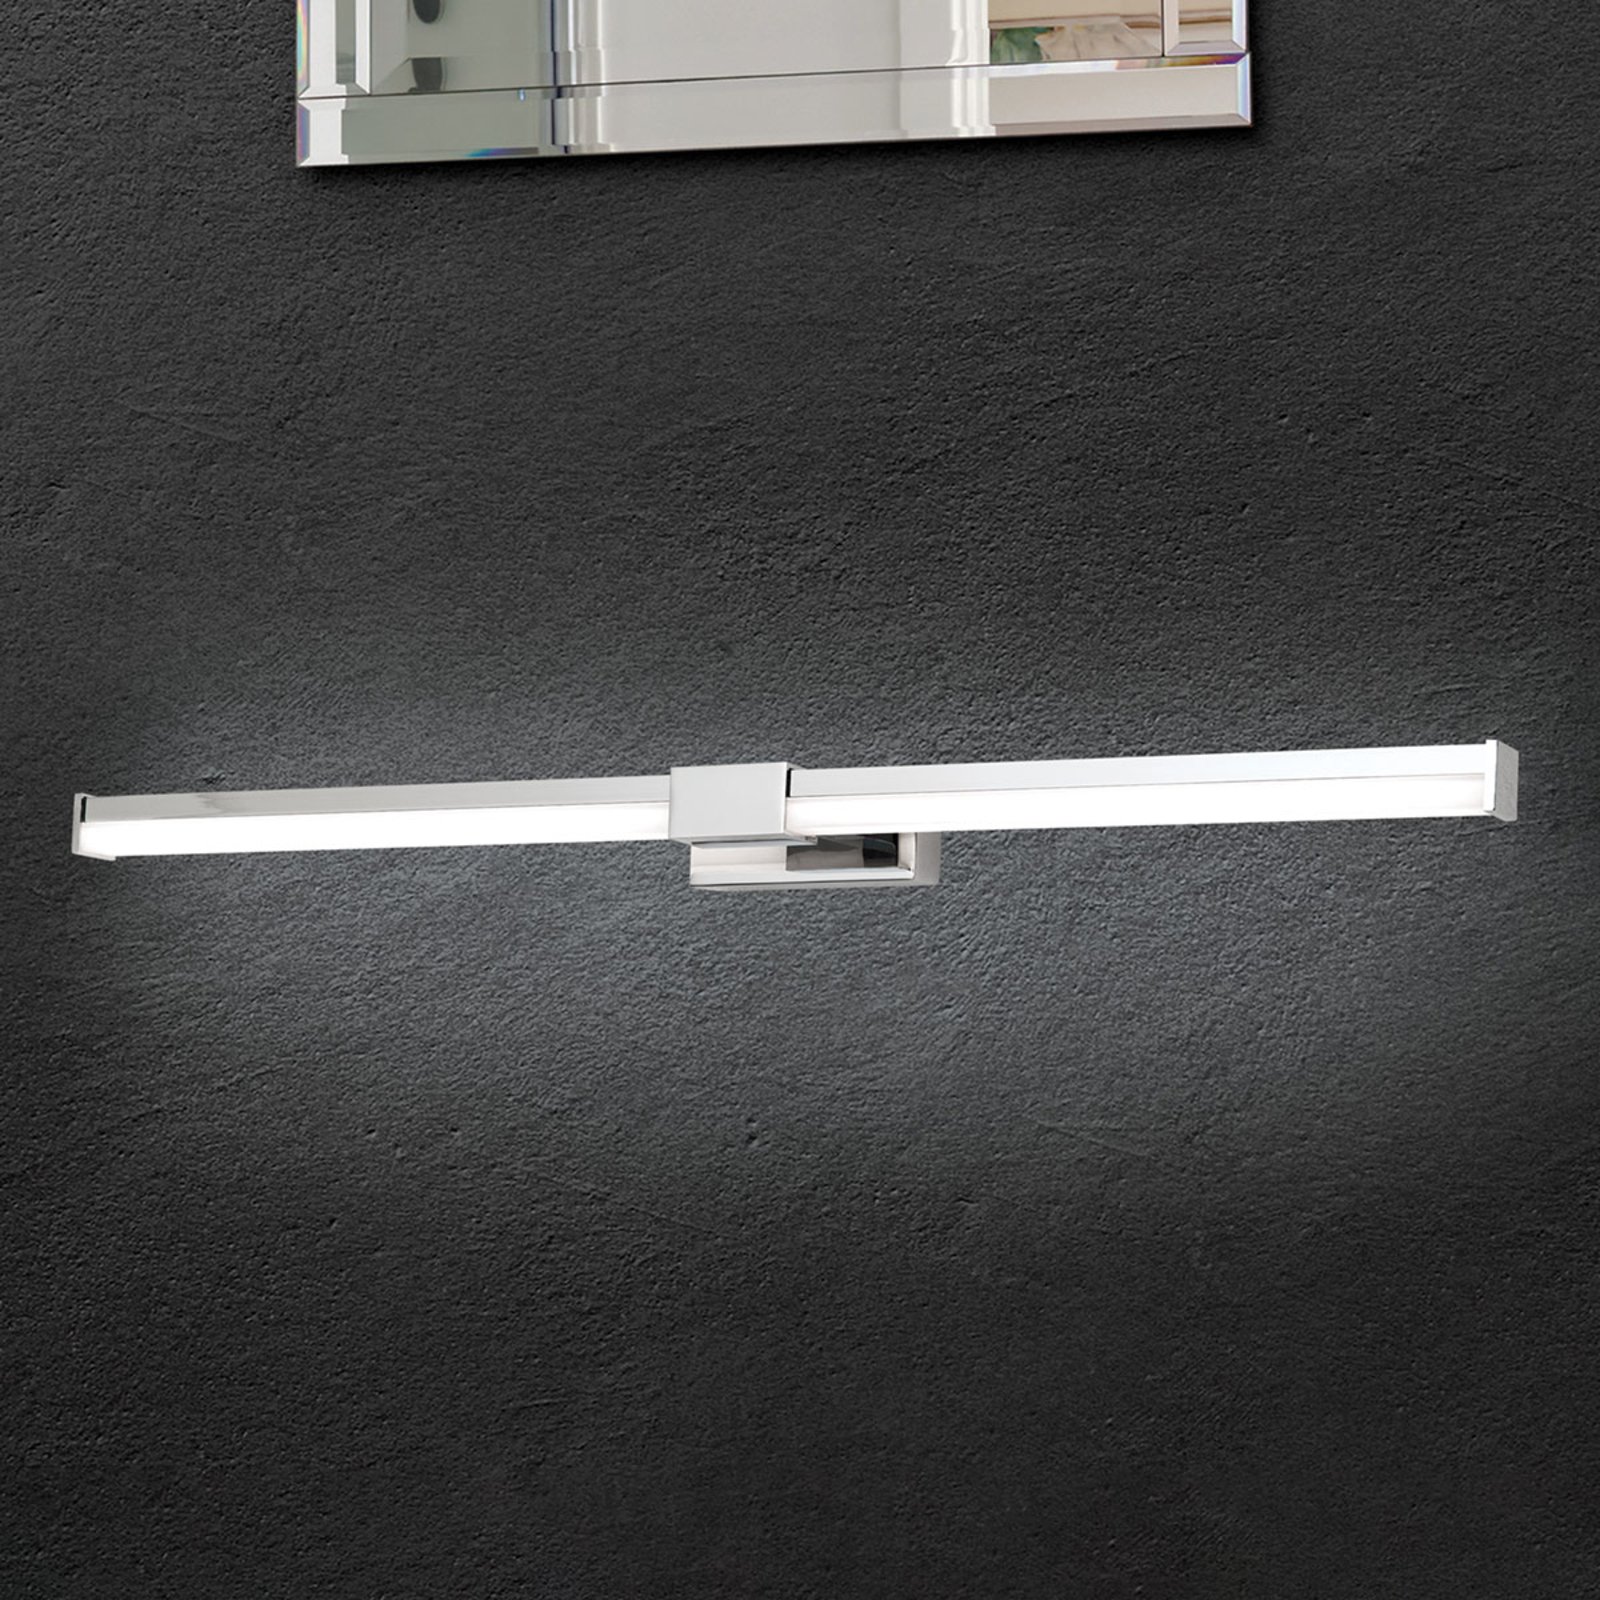 Kúpeľňové zrkadlové svietidlo Argo s LED 55,5 cm